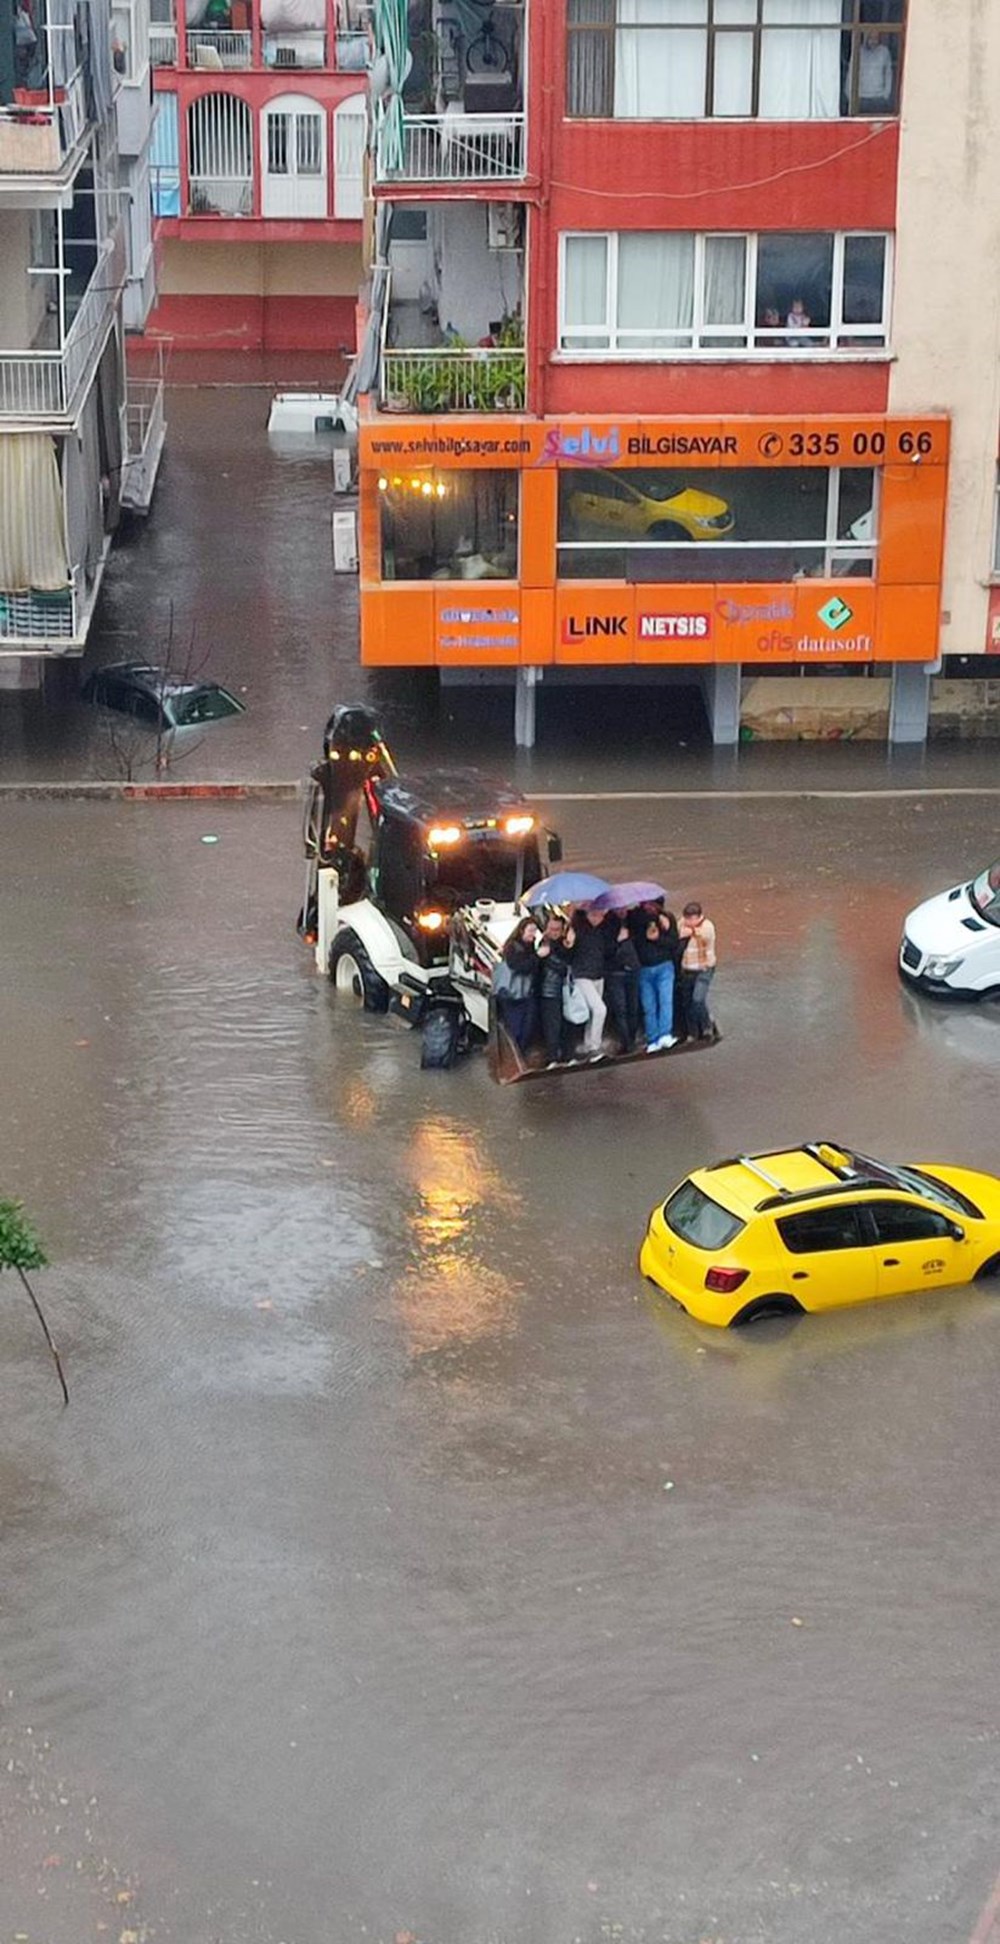 Antalya'da sel ve su baskını: 1 kişi yaşamını yitirdi, 6  ilçede eğitime ara verildi (4 şehir için turuncu kodlu uyarı) - 5